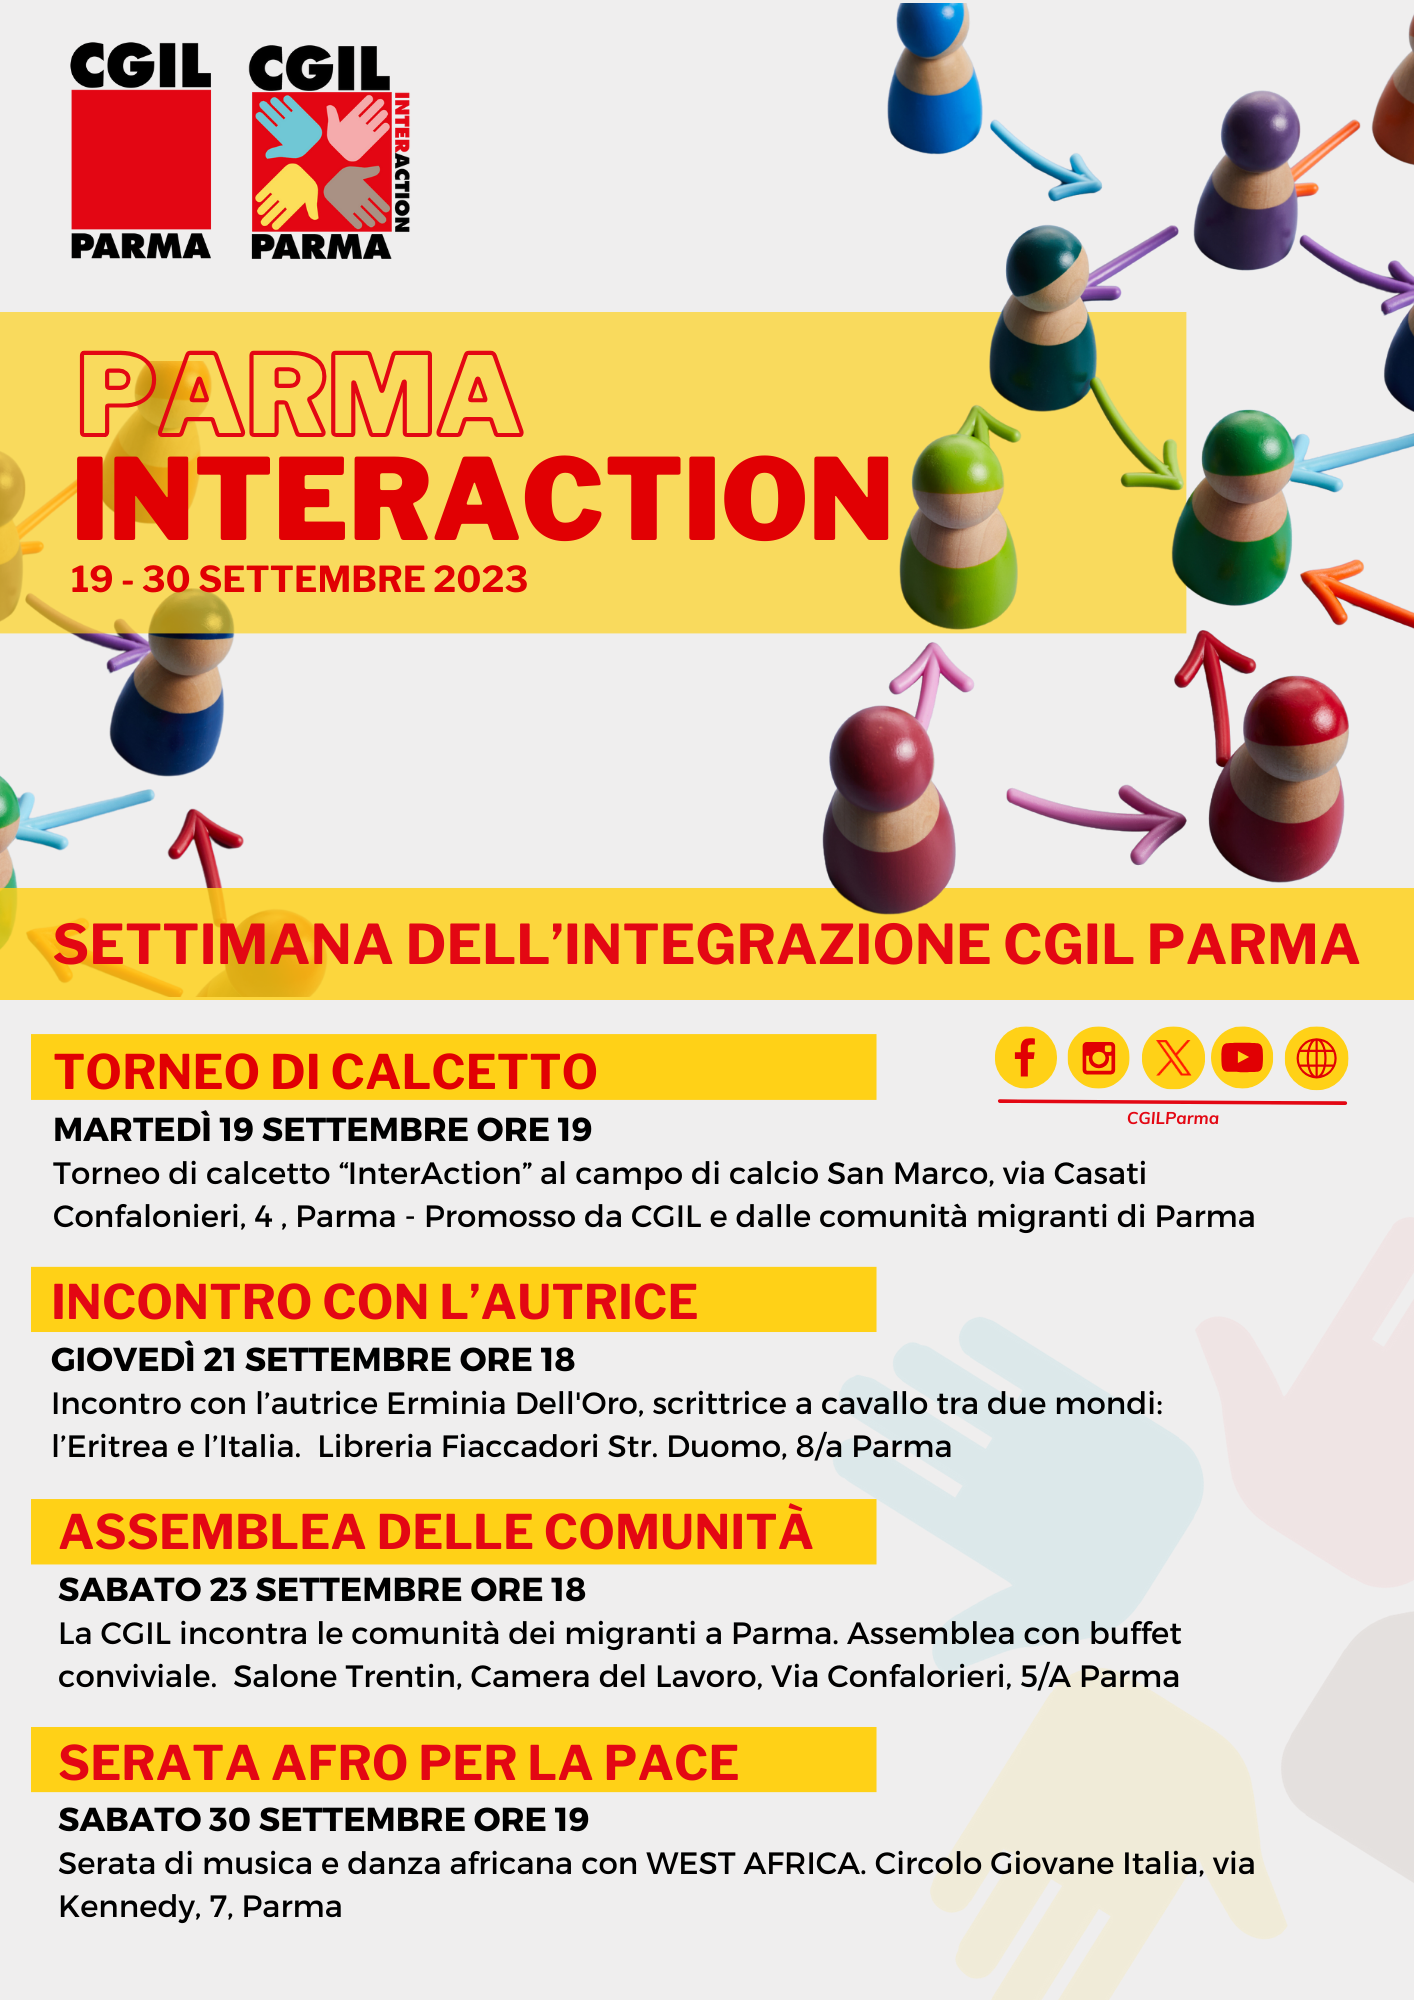 Parma interaction